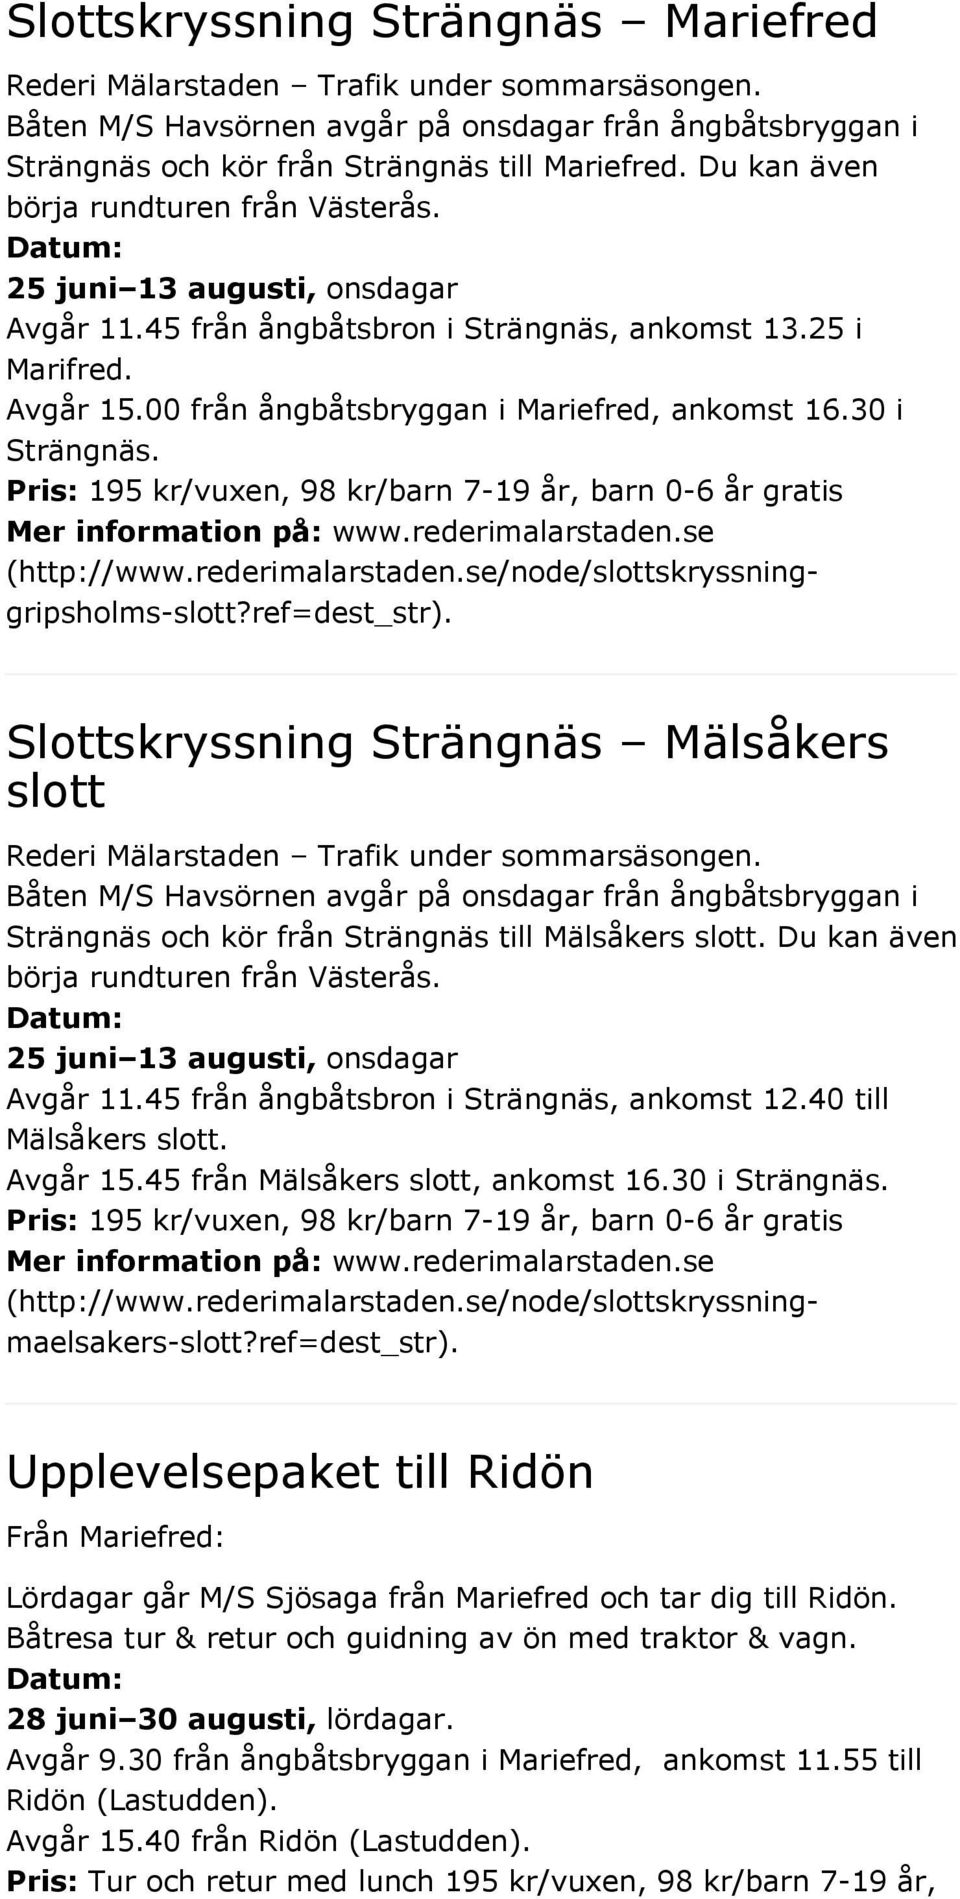 Pris: 195 kr/vuxen, 98 kr/barn 7-19 år, barn 0-6 år gratis (http://www.rederimalarstaden.se/node/slottskryssninggripsholms-slott?ref=dest_str).